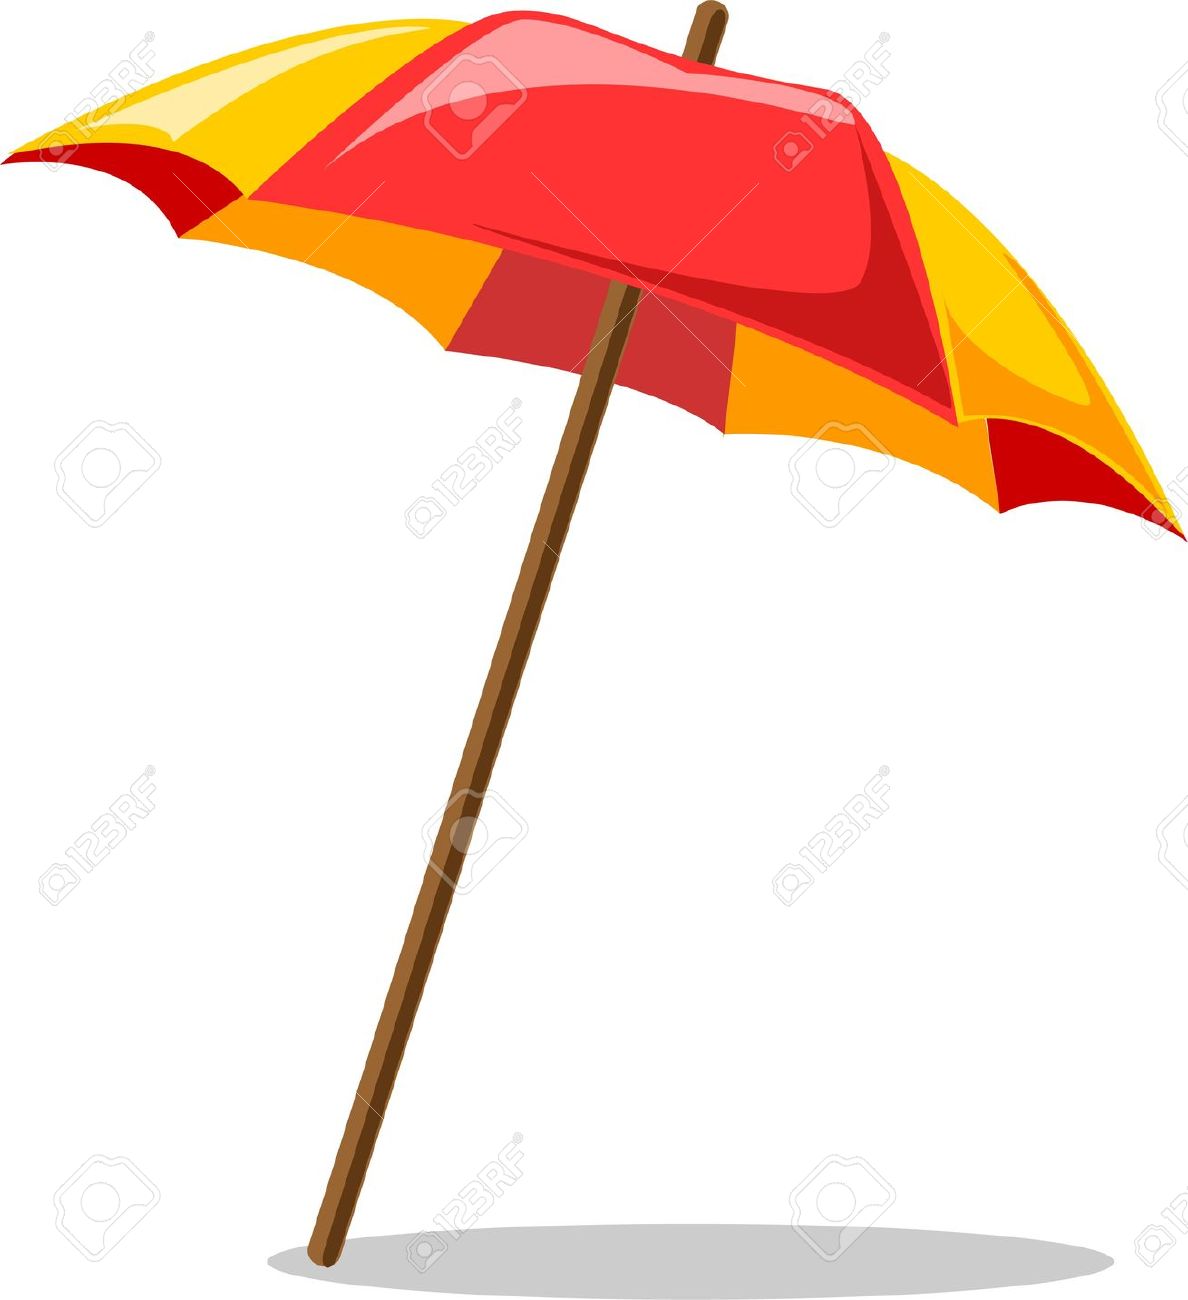 summer umbrella clip art - photo #48